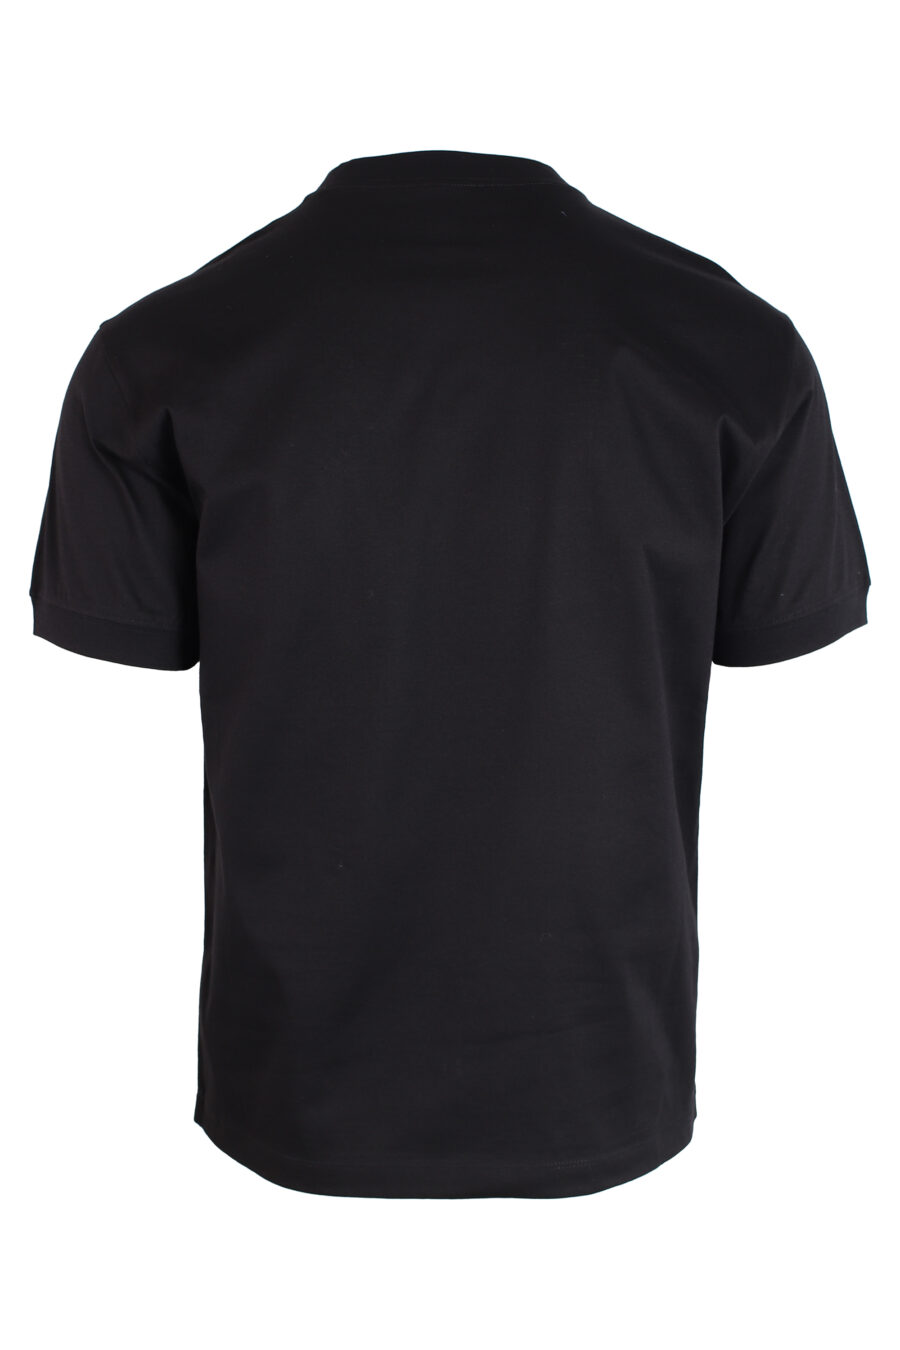 Camiseta negra con maxilogo centrado dorado en puntos - IMG 3234